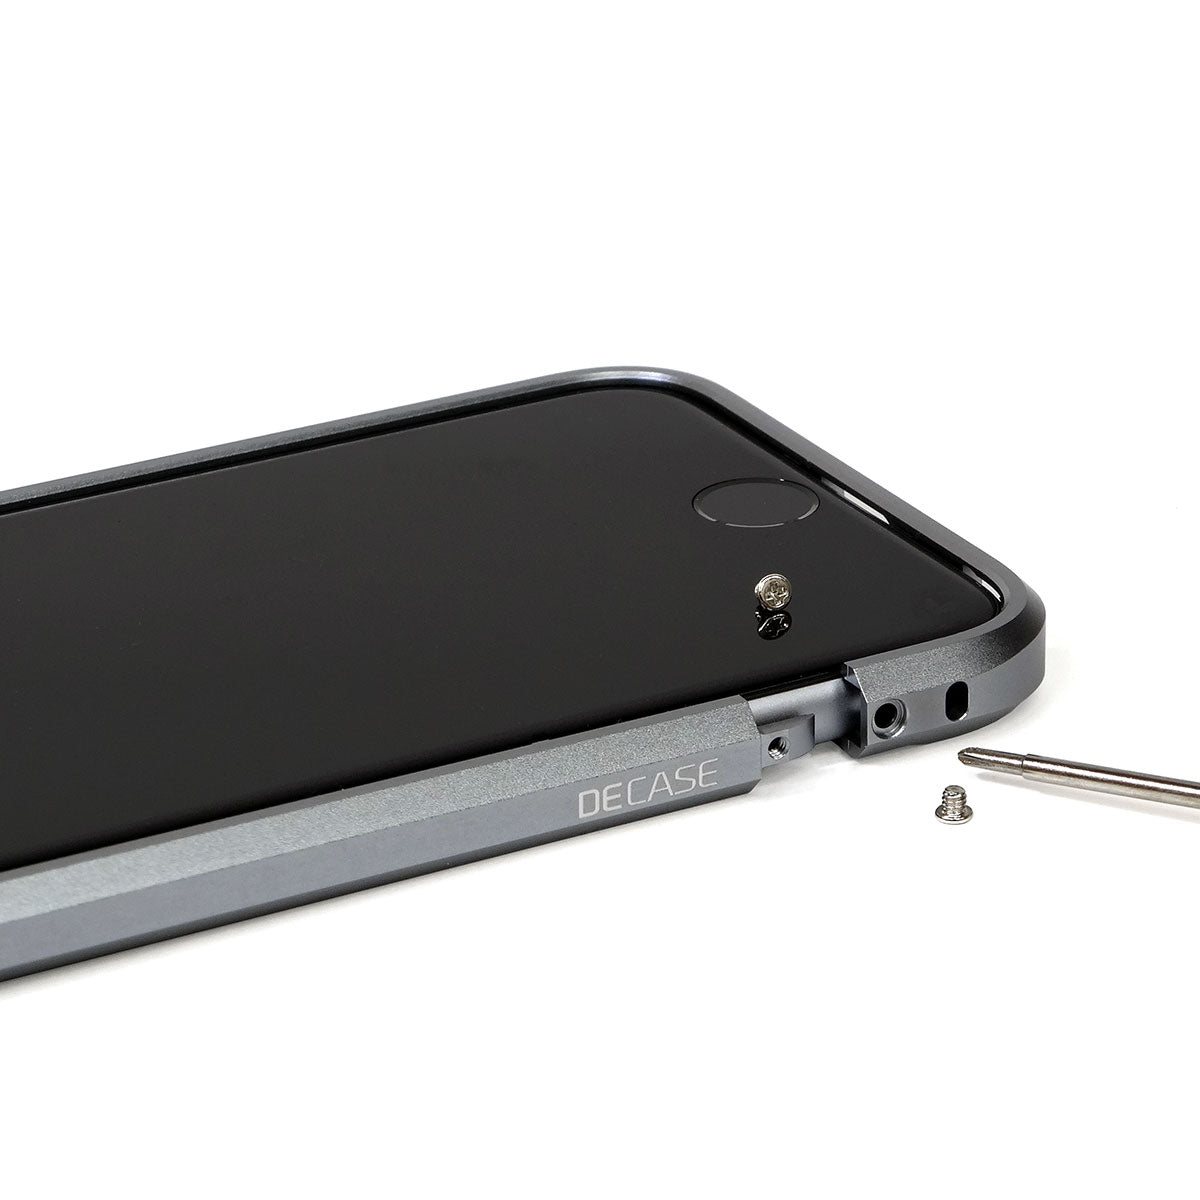  iPhone 6s aluminum bumper case